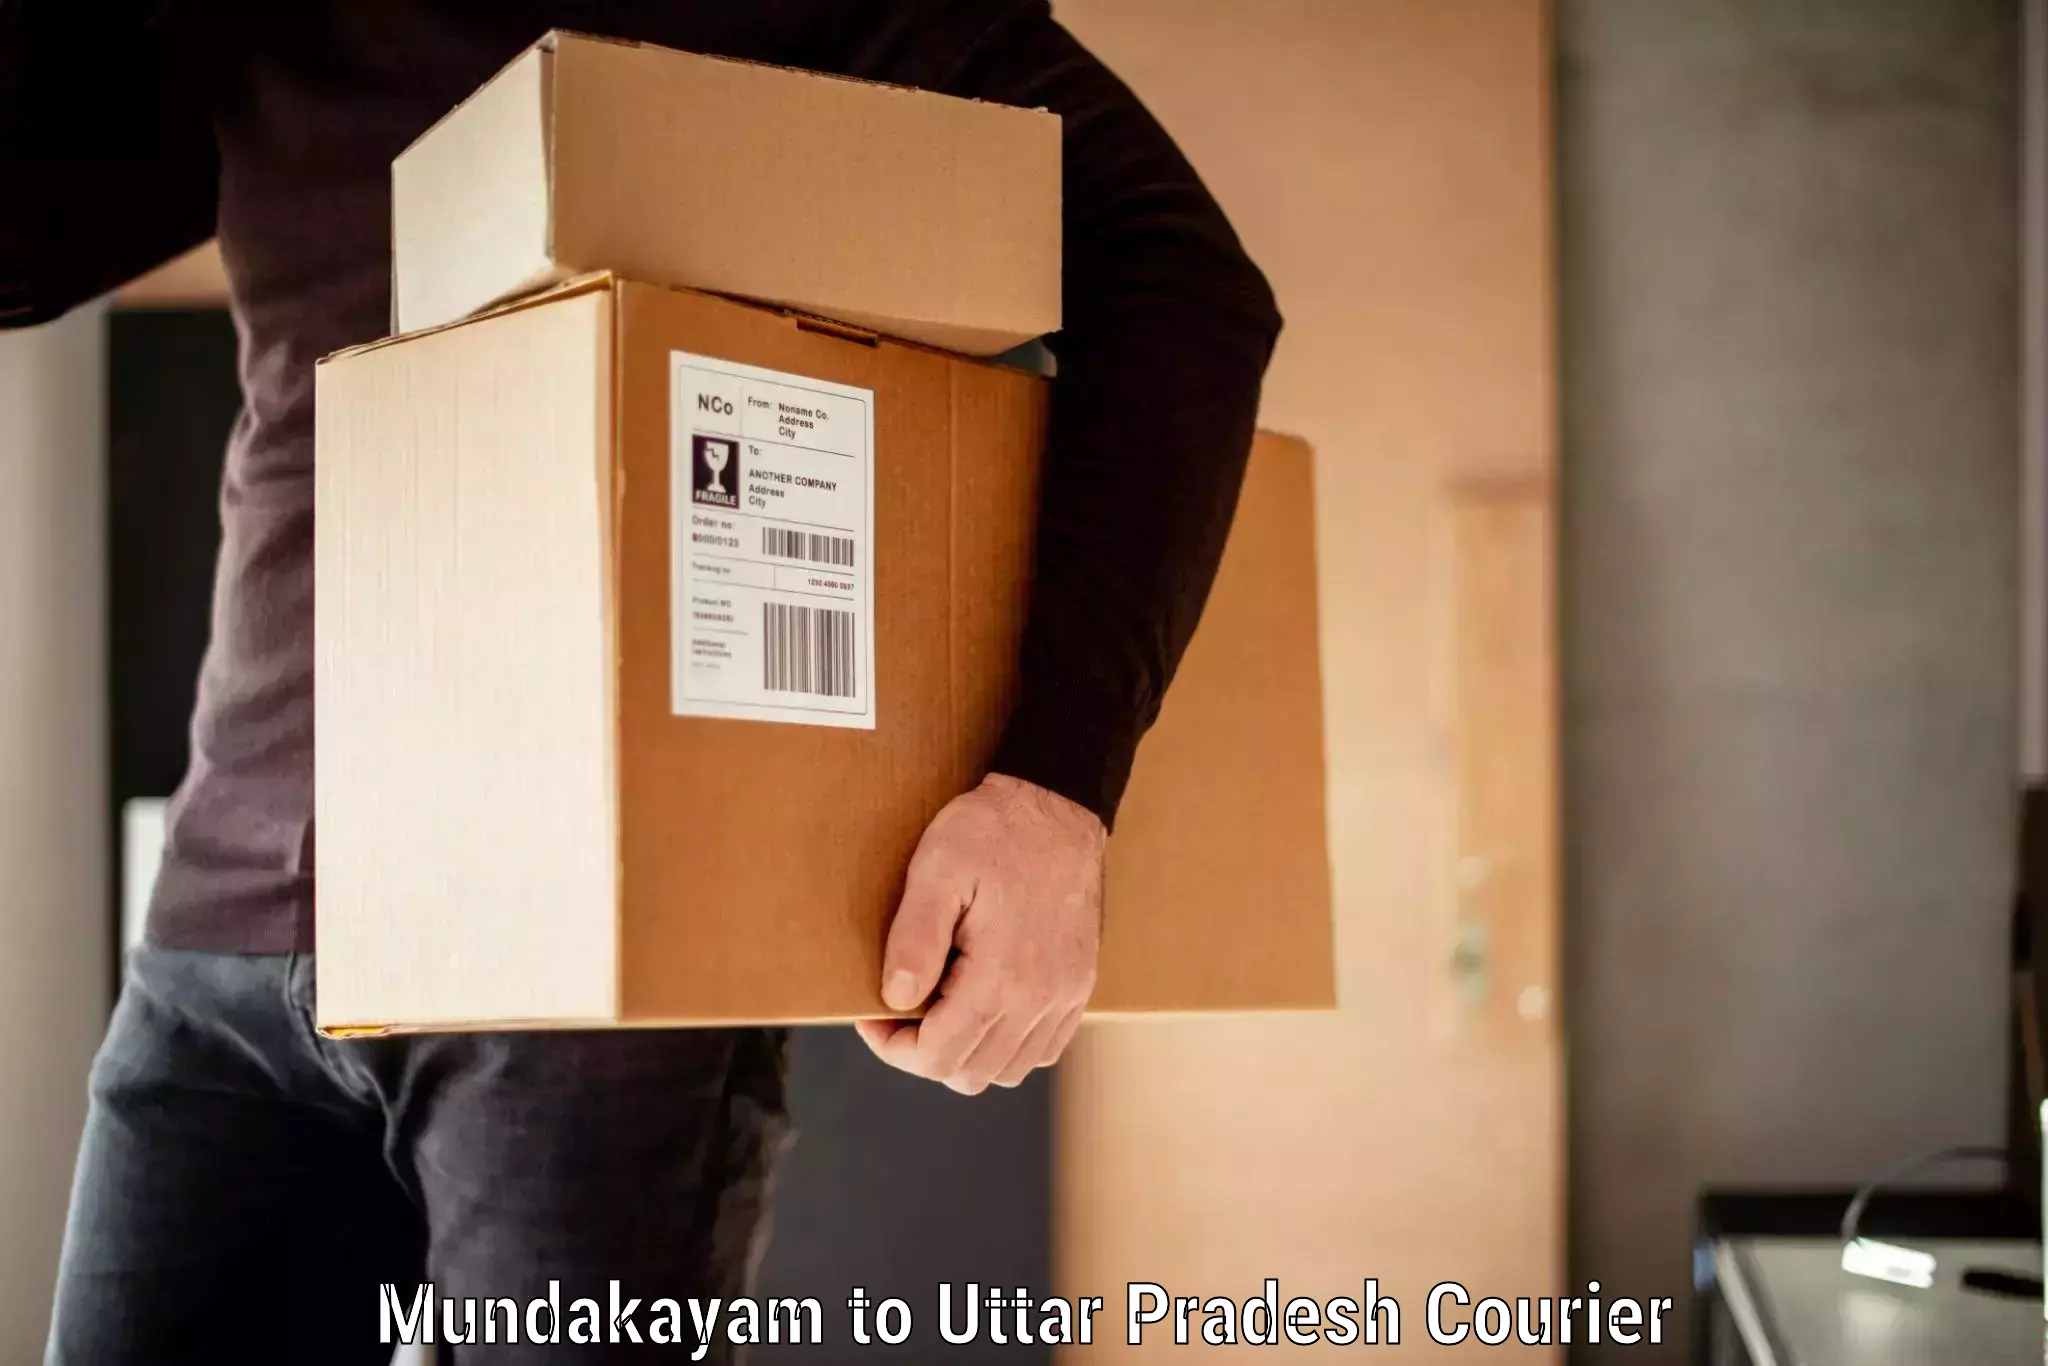 Baggage courier FAQs in Mundakayam to Colonelganj